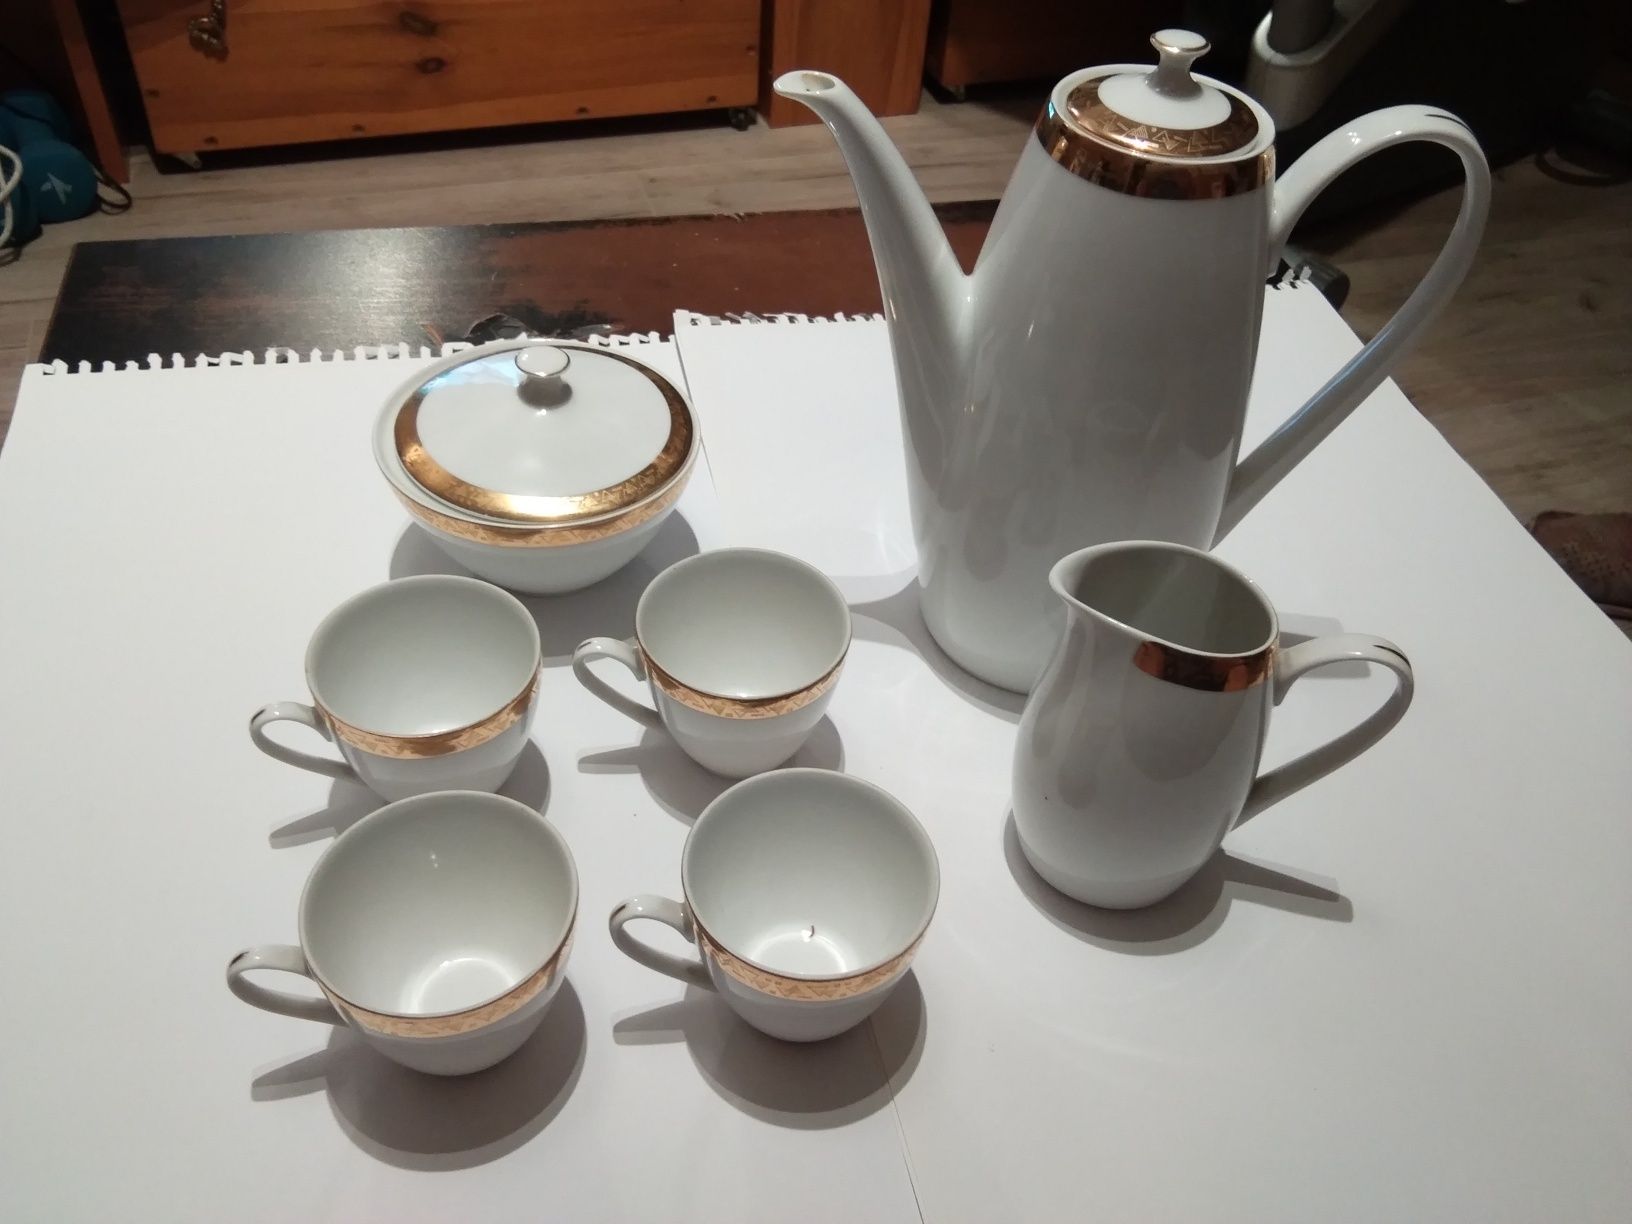 Ceramika stołowa do kawy, herbaty. Okres PRL.